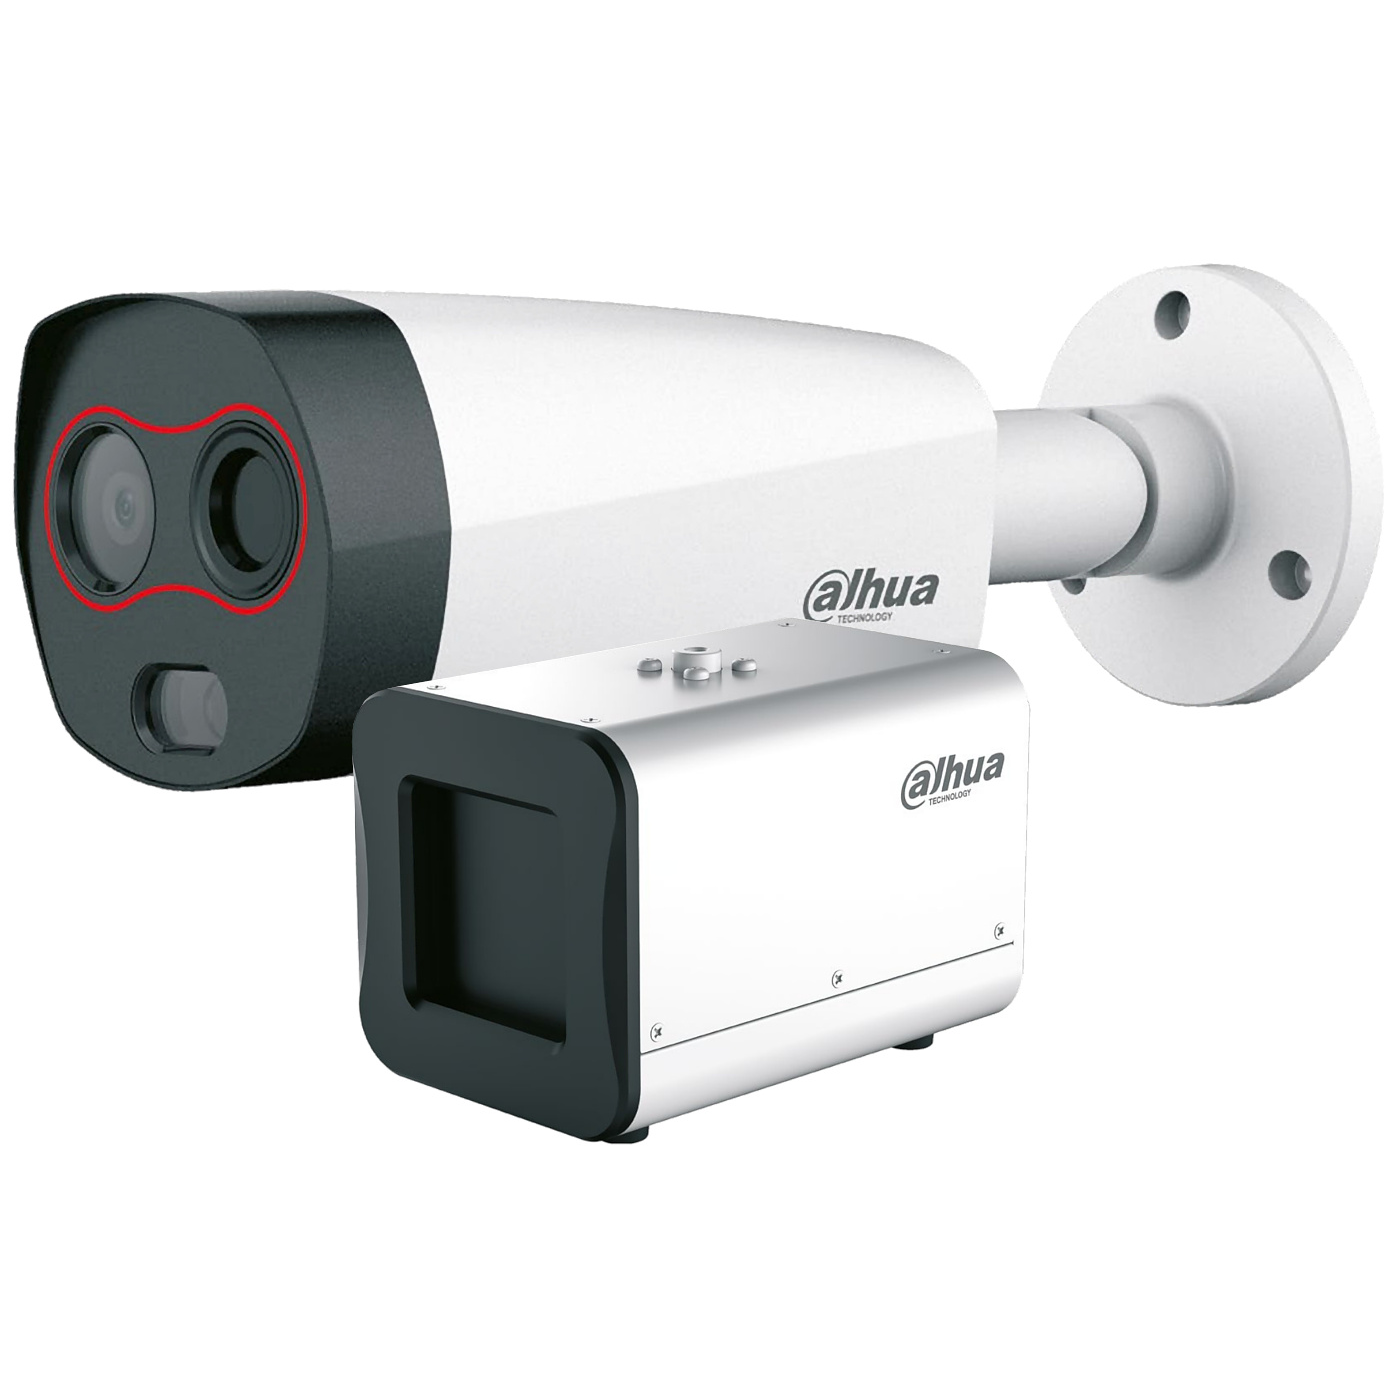 Soporte de plástico ajustable para cámara de seguridad, montaje en pared,  interior y exterior, para cámara CCTV, proyector, soporte de cámara,  accesorio de vigilancia (1 unidad)